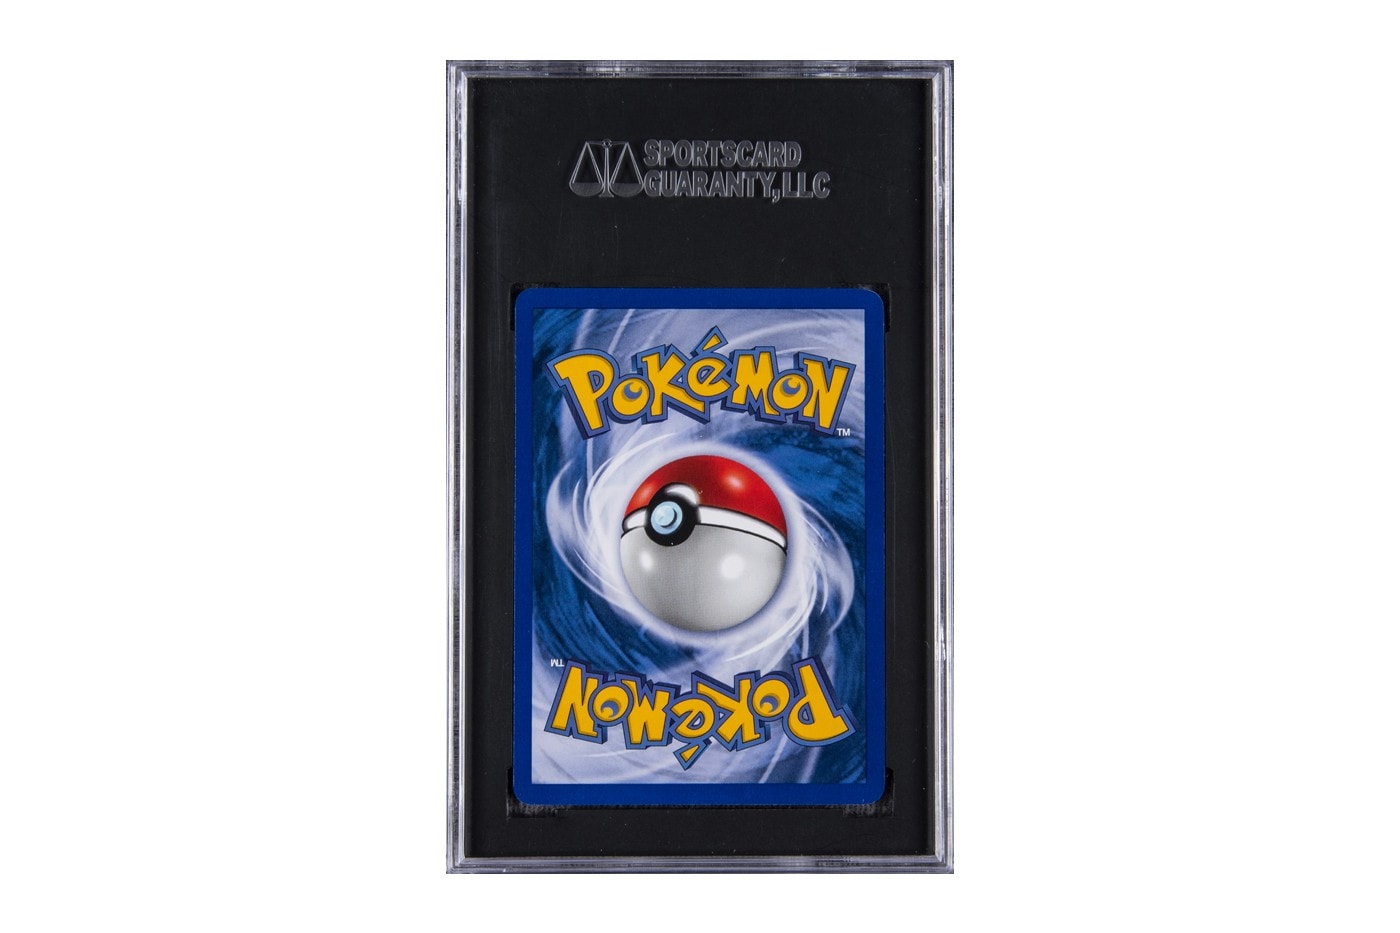 1999 年初版 Pokémon 卡牌或將打破拍賣紀錄